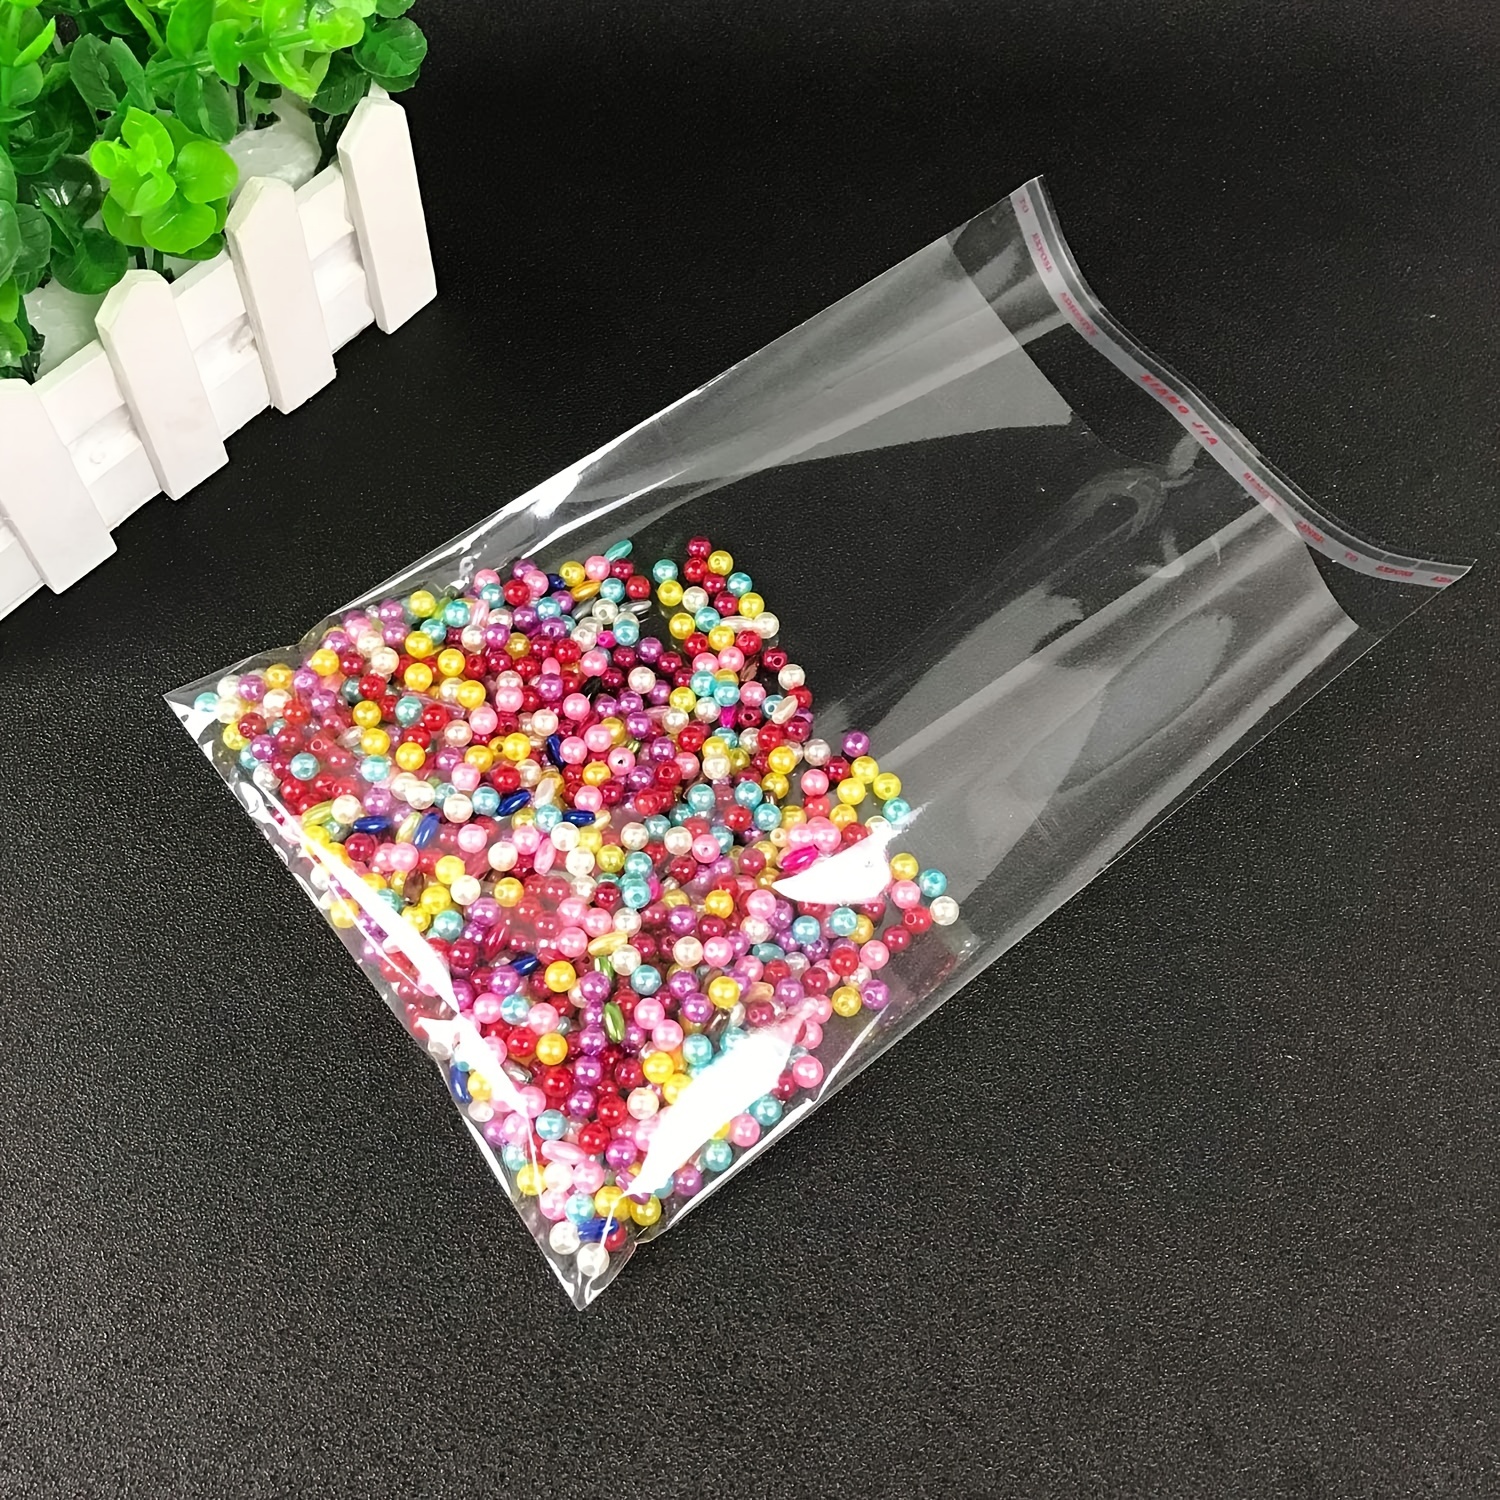 200 unids/ de bolsas de plástico transparente Opp autosellantes